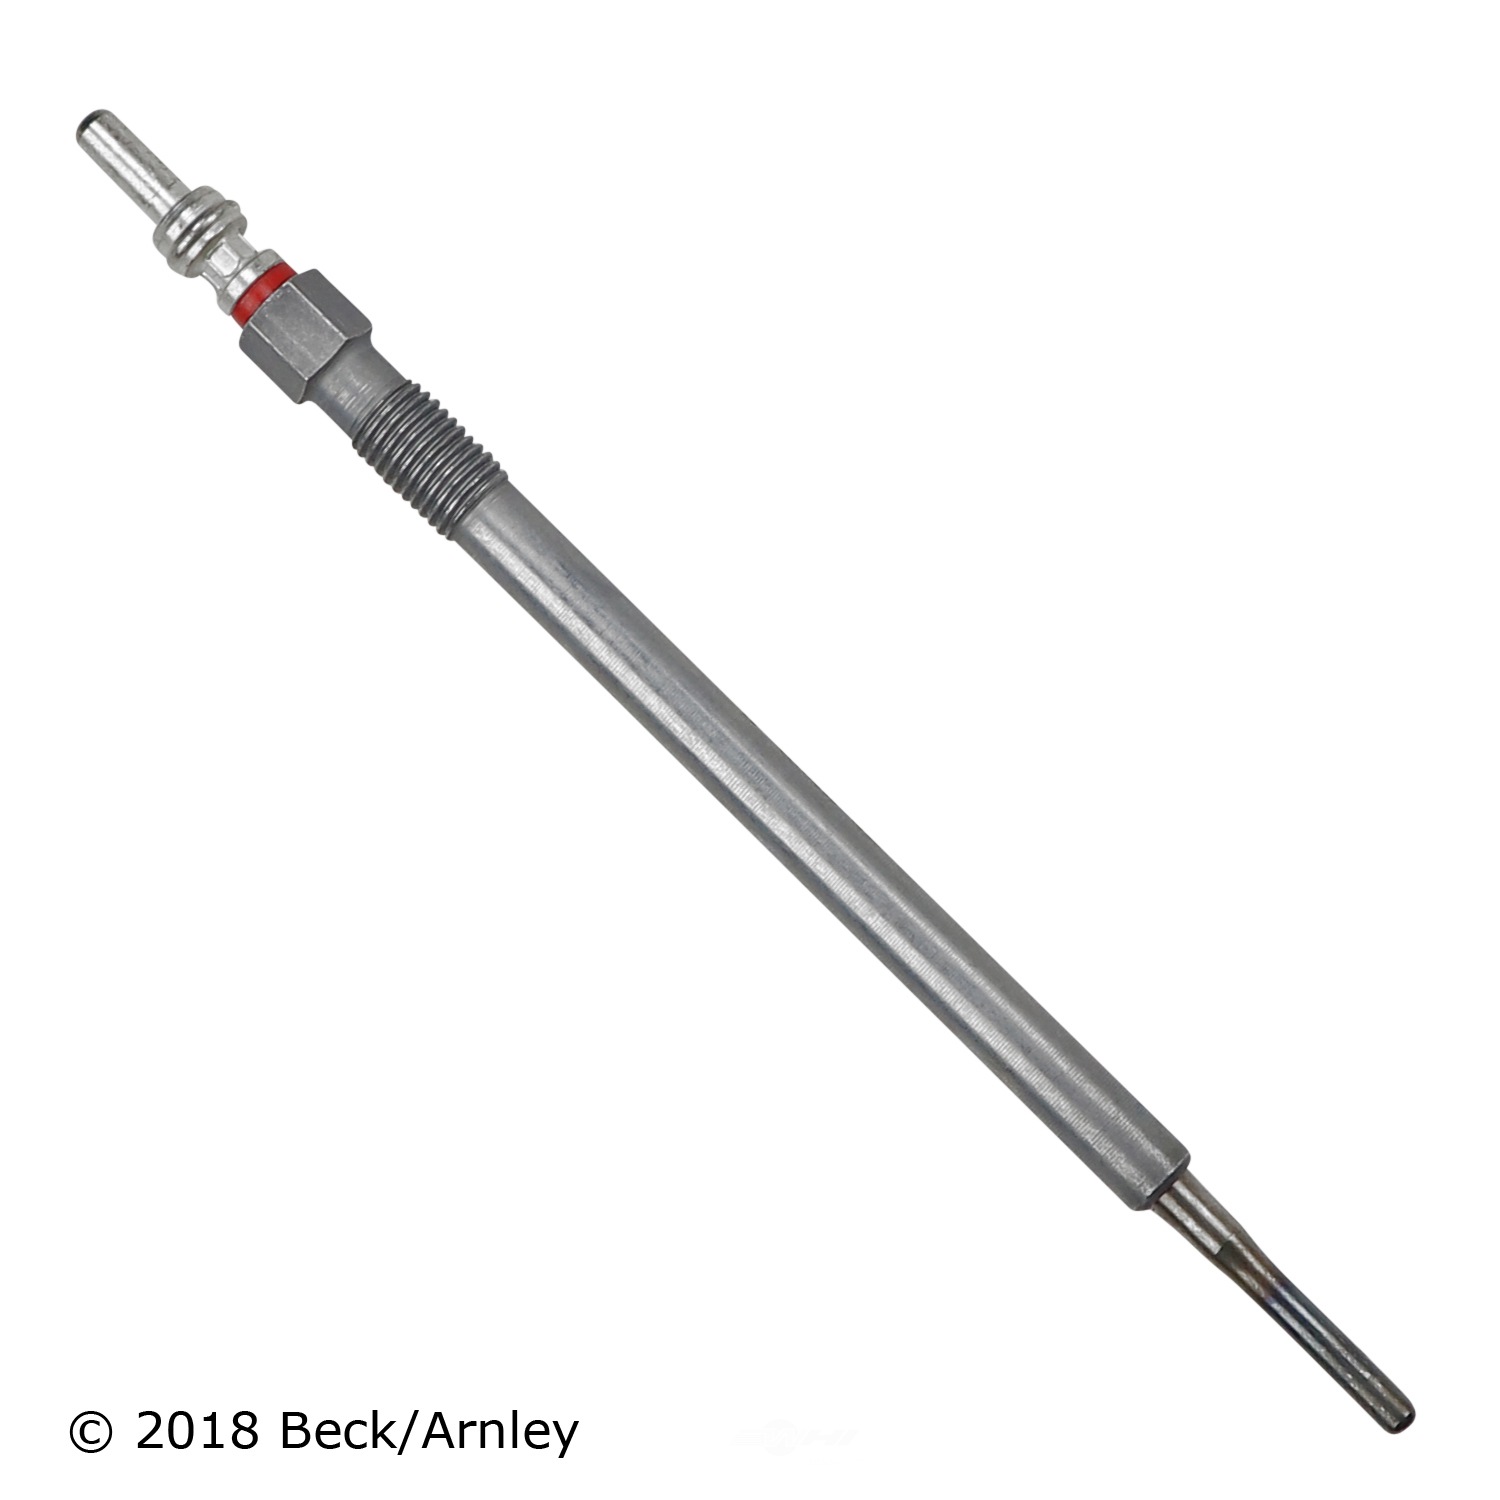 BECK/ARNLEY - Diesel Glow Plug - BAR GE105